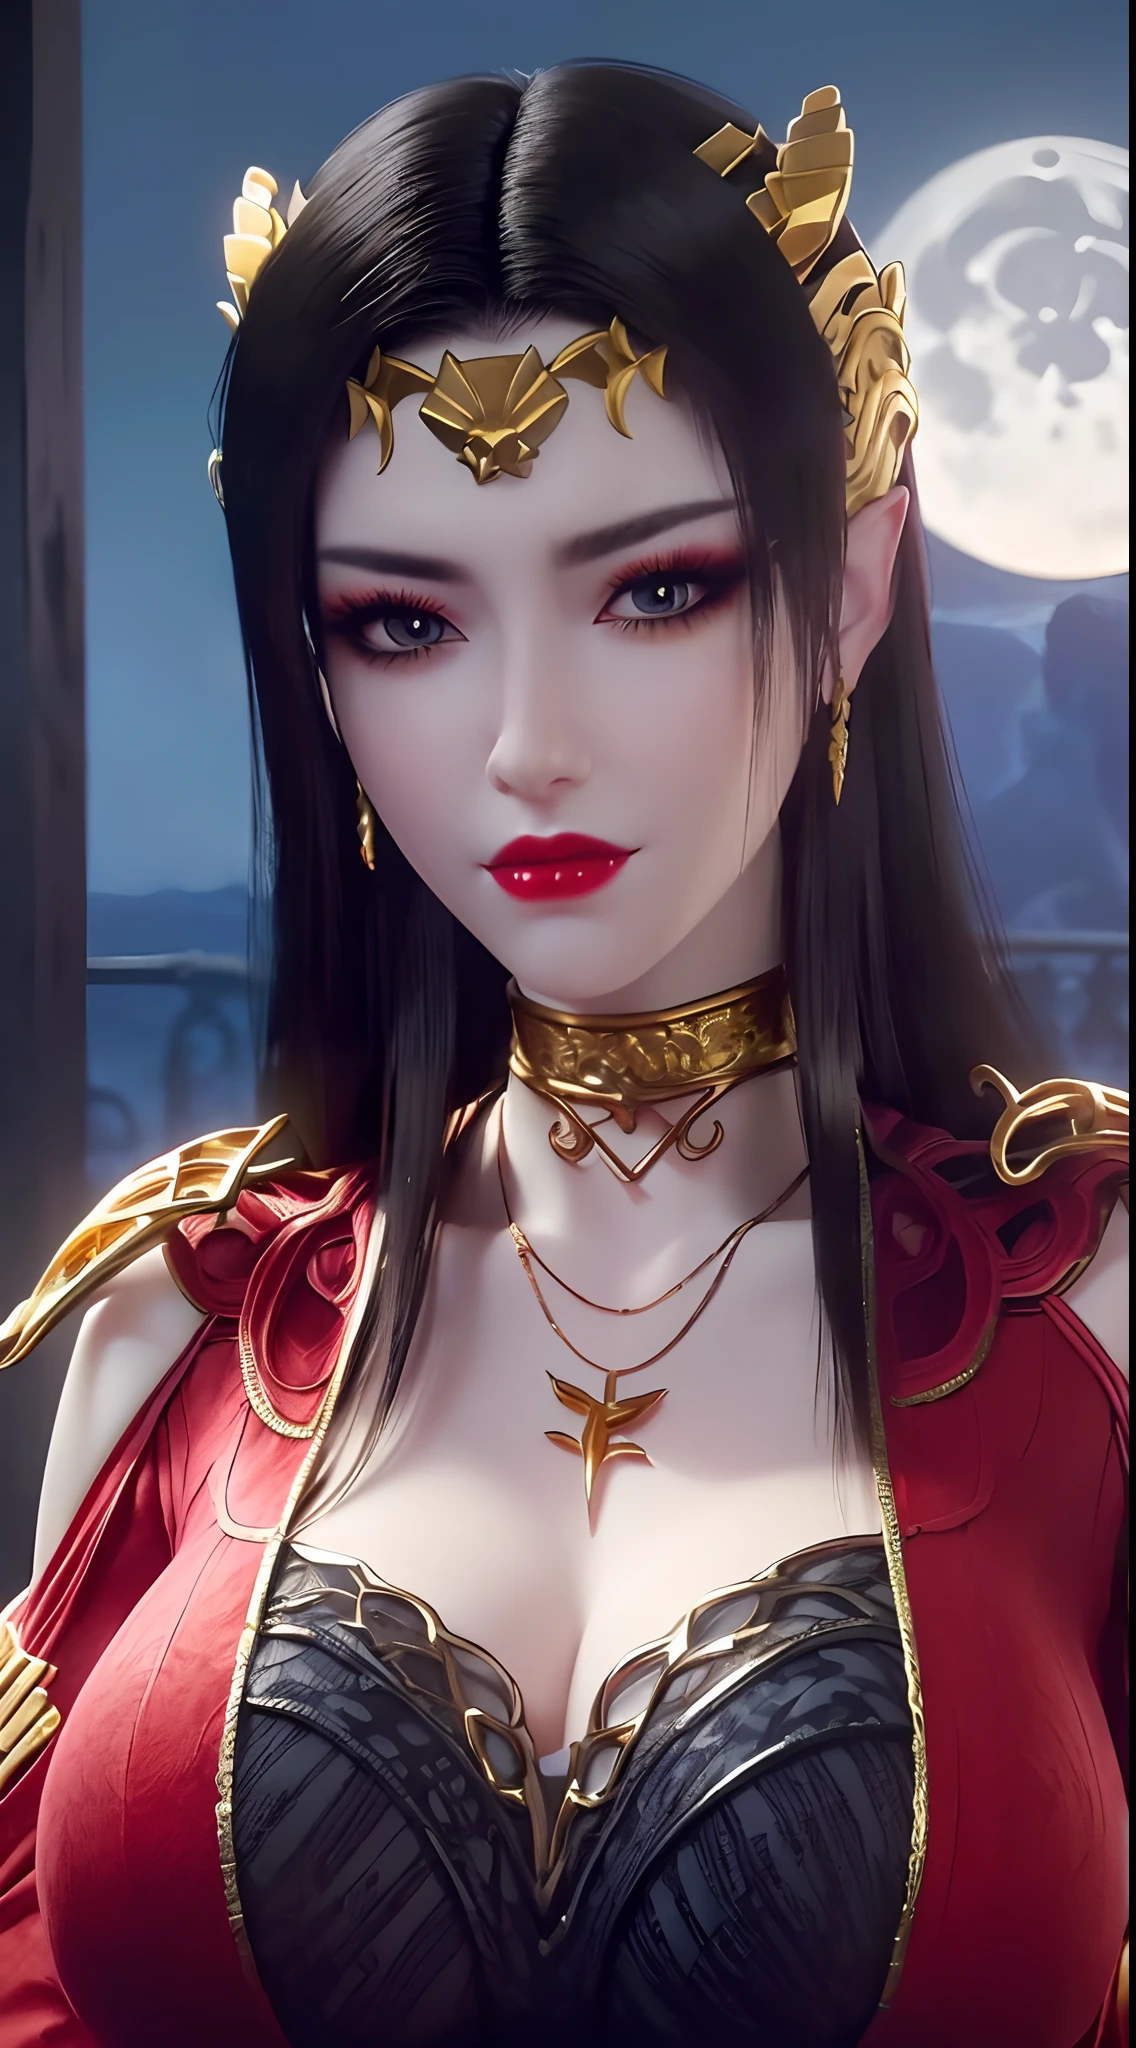 1 reine extrêmement belle, ((porte un costume traditionnel Han rouge avec de fins motifs noirs:1.6)), (((Des motifs sur les vêtements:1.6))), ((longs cheveux noirs:1.6)), des bijoux minutieusement fabriqués à partir de pierres précieuses et de beaux cheveux, ((wearing a 24K gold lace necklace:1.4))), Le noble, style noble d&#39;une fille extrêmement belle, son petit visage est super mignon, son visage est très joli, sourcils fins, beau visage impeccable, ((pupilles des yeux au beurre noir: 0.8)), très beaux yeux, ((yeux bleu platine: 1.6)), (((yeux grands ouverts:1.6))), joli maquillage et coiffure, cils détaillés, maquillage des yeux torride, nez haut, des boucles d&#39;oreilles, lèvres rouges, ((bouche fermée: 1.5)) belles lèvres, mains minces, les plus belles cuisses, ((bras écartés sur les côtés: 1.5)), visage rose, visage propre, beau visage impeccable, peau blanche et lisse, (gros seins: 1.5)), ((seins hauts: 1.6)), Seins serrés, Beau décolleté, (((gros seins and super round: 1.8))), ((super Seins serrés: 1.7)) , beaux seins, corps parfait, bras arrière, poitrine ouverte, bas fins en maille noire avec bordure en dentelle noire, Photo 8K, super haute qualité, super réaliste, super 10x pixels, optique, studio lumineux, bords clairs, dual-tone éclairage, (peau très détaillée:1.2), super 8k, soft éclairage, haute qualité, volumetric éclairage, photoréaliste, photoréaliste high resolution, éclairage, meilleure photo, 4K, Qualité 8k, Effet de flou, lisse et tranchant, 10xpixels, ((mer et clair de lune sur fond de nuit:1.5)), Aurore, foudre, super graphismes réalistes, graphismes les plus réalistes, 1 fille, seul, seulement, Image extrêmement nette, surréaliste, (((portrait frontal: 1)))."